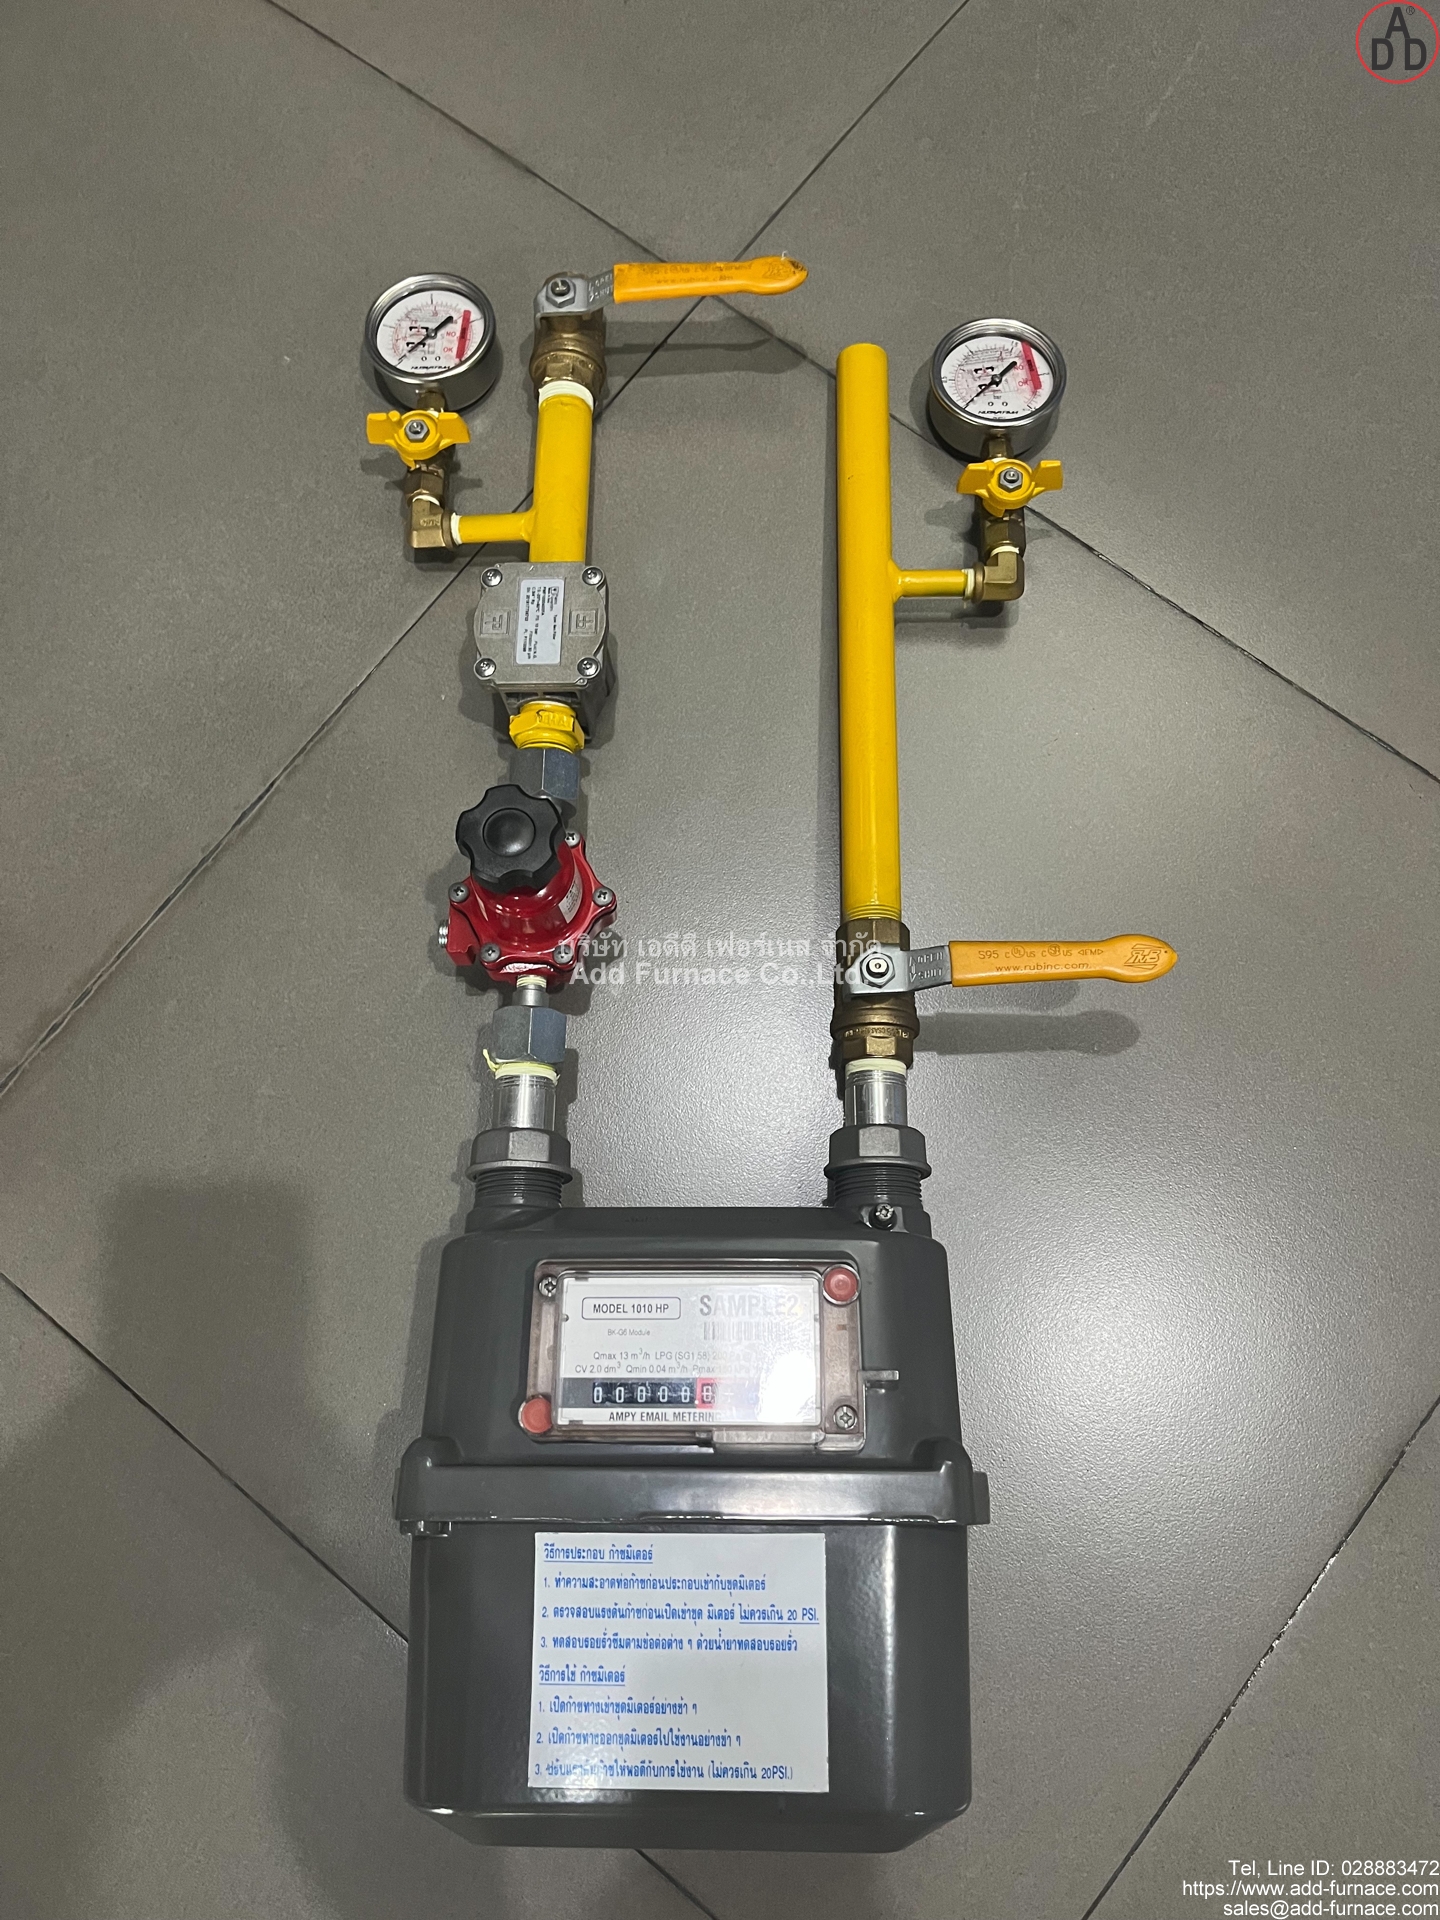 gas-meter-750hp-1010hp-standard-install (2)